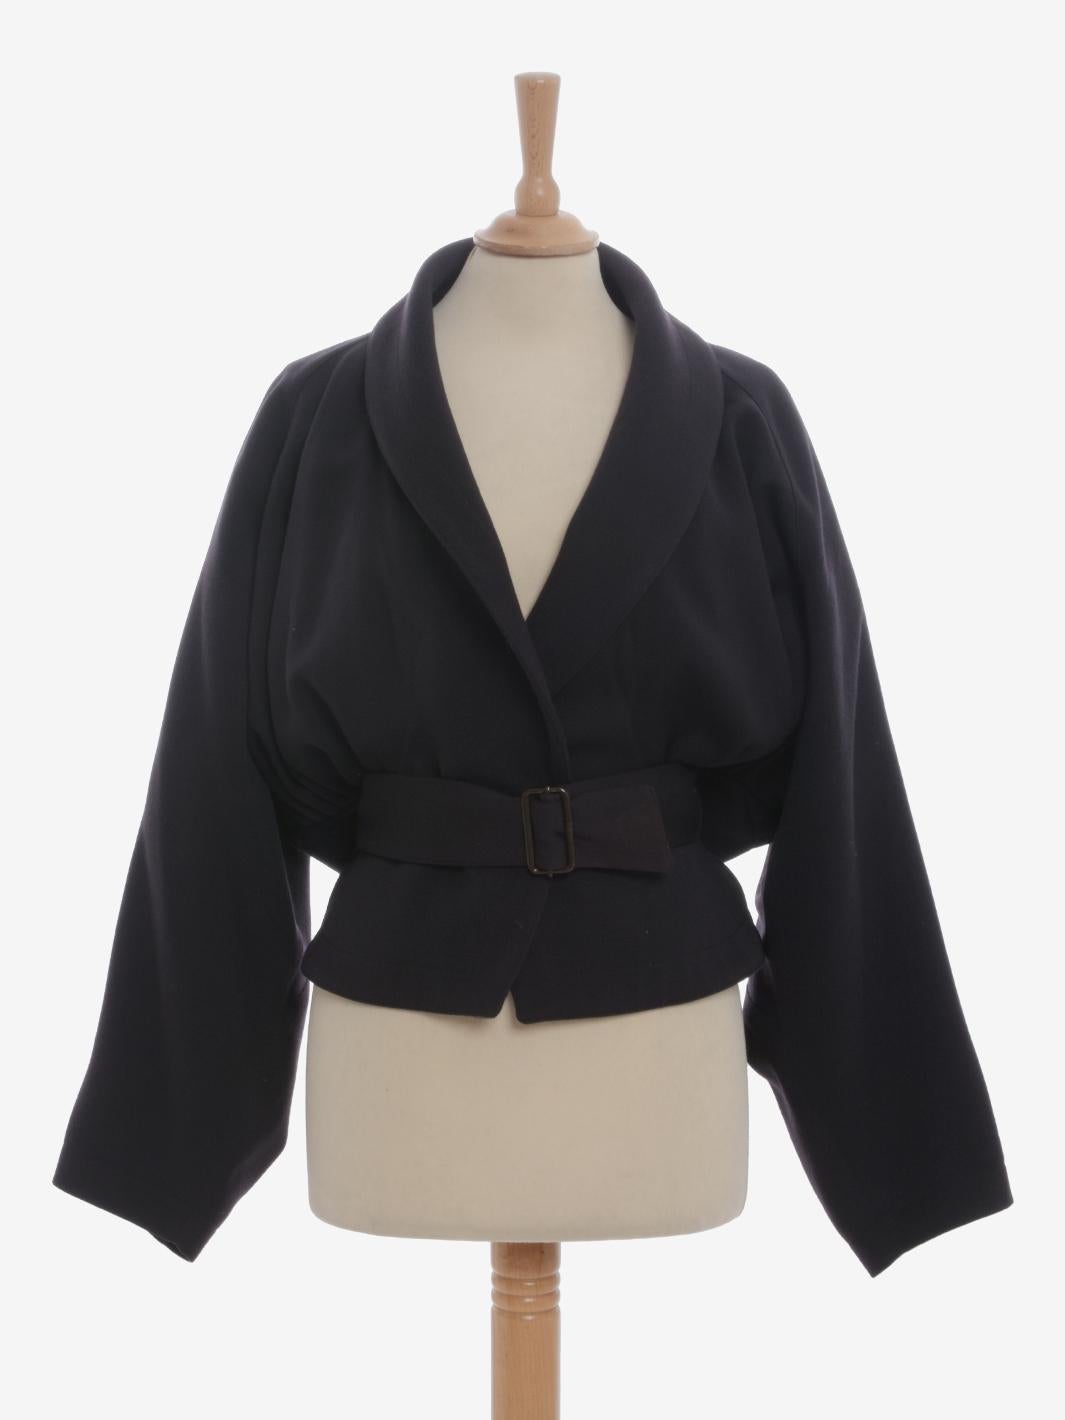 La veste ceinturée en laine Alaïa est un blazer rare réalisé par Azzedine Alaïa dans la seconde moitié des années 1980, avec un col châle et des manches légèrement chauve-souris. La ceinture croisée est réglable et les côtés sont décorés de